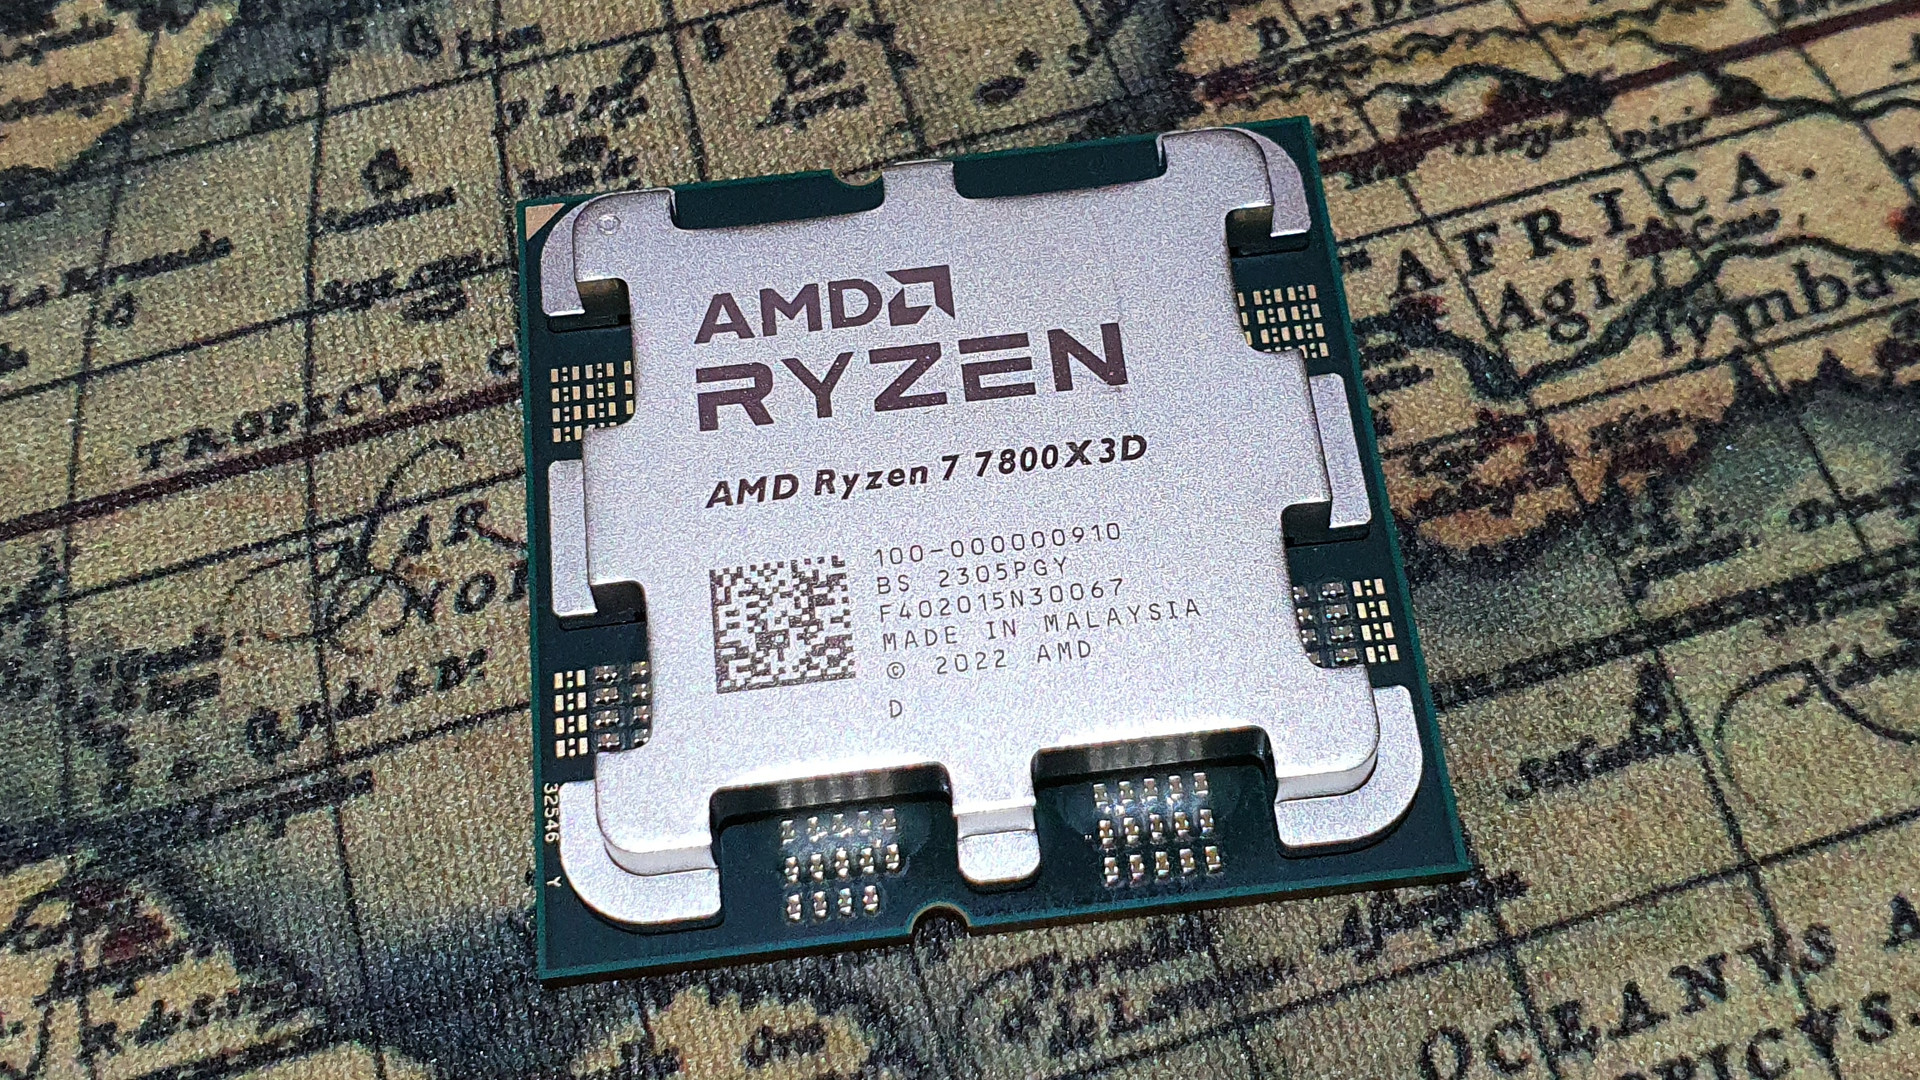 Les Ryzen 9000X d'AMD seront proches, mais derrière les Ryzen 7000X3D côté jeu vidéo